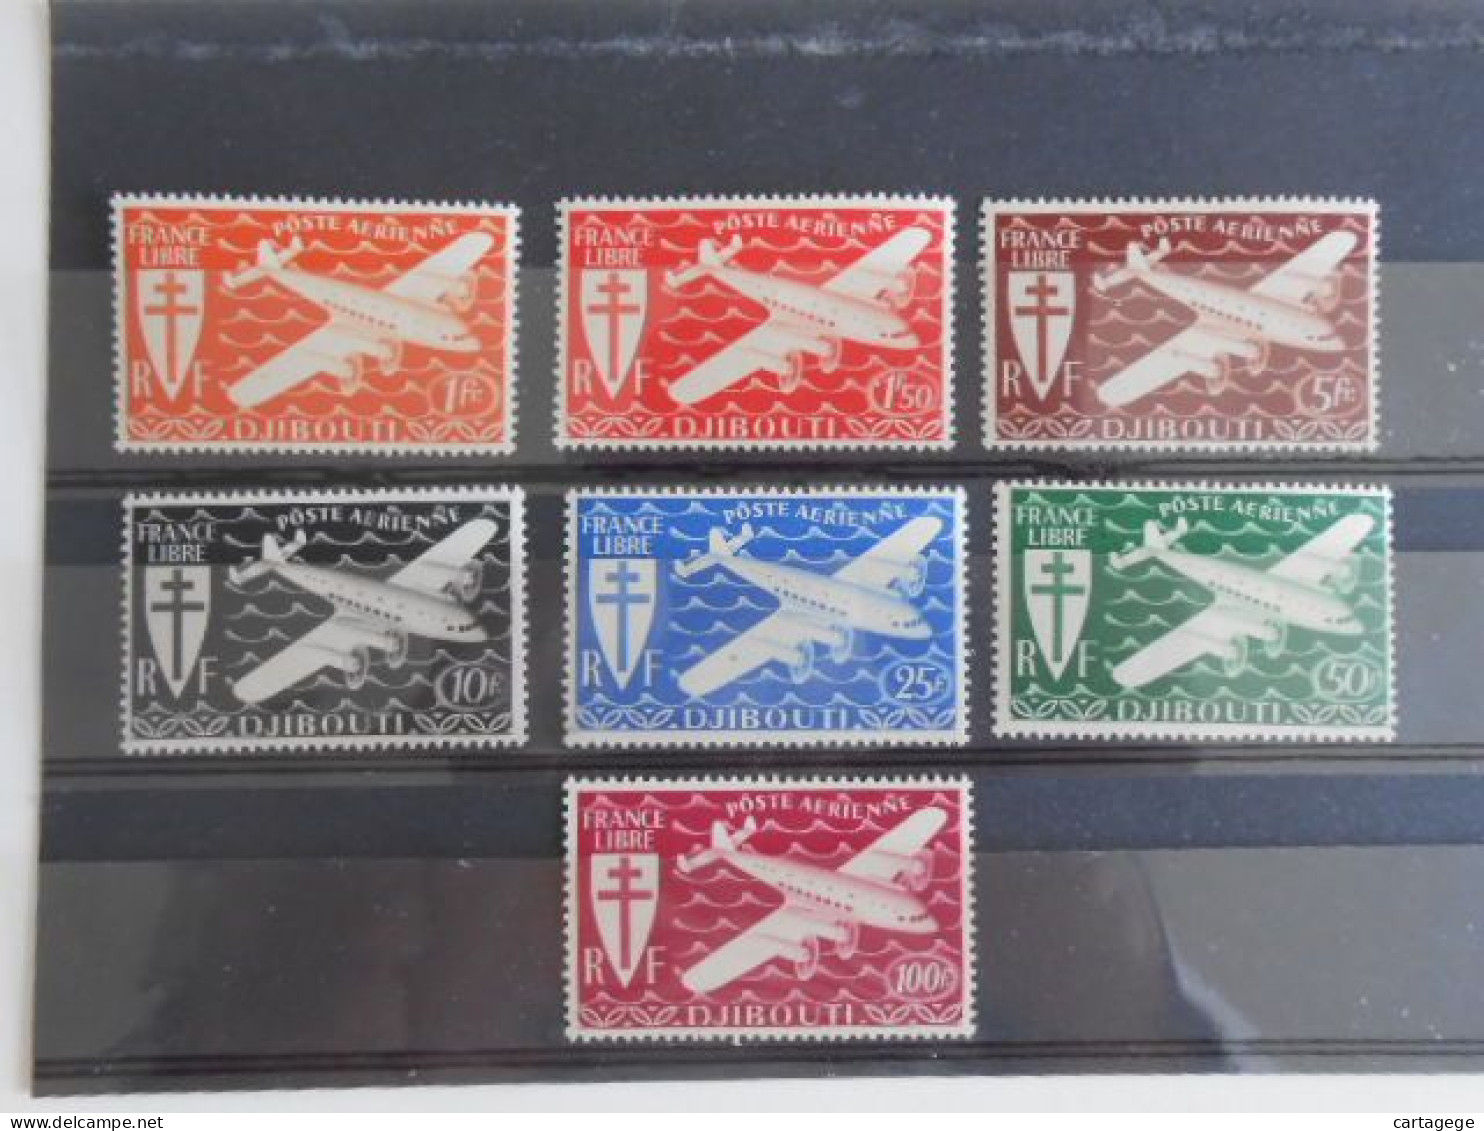 COTE DES SOMALIS YT 1/7 SERIE DE LONDRES** - Unused Stamps